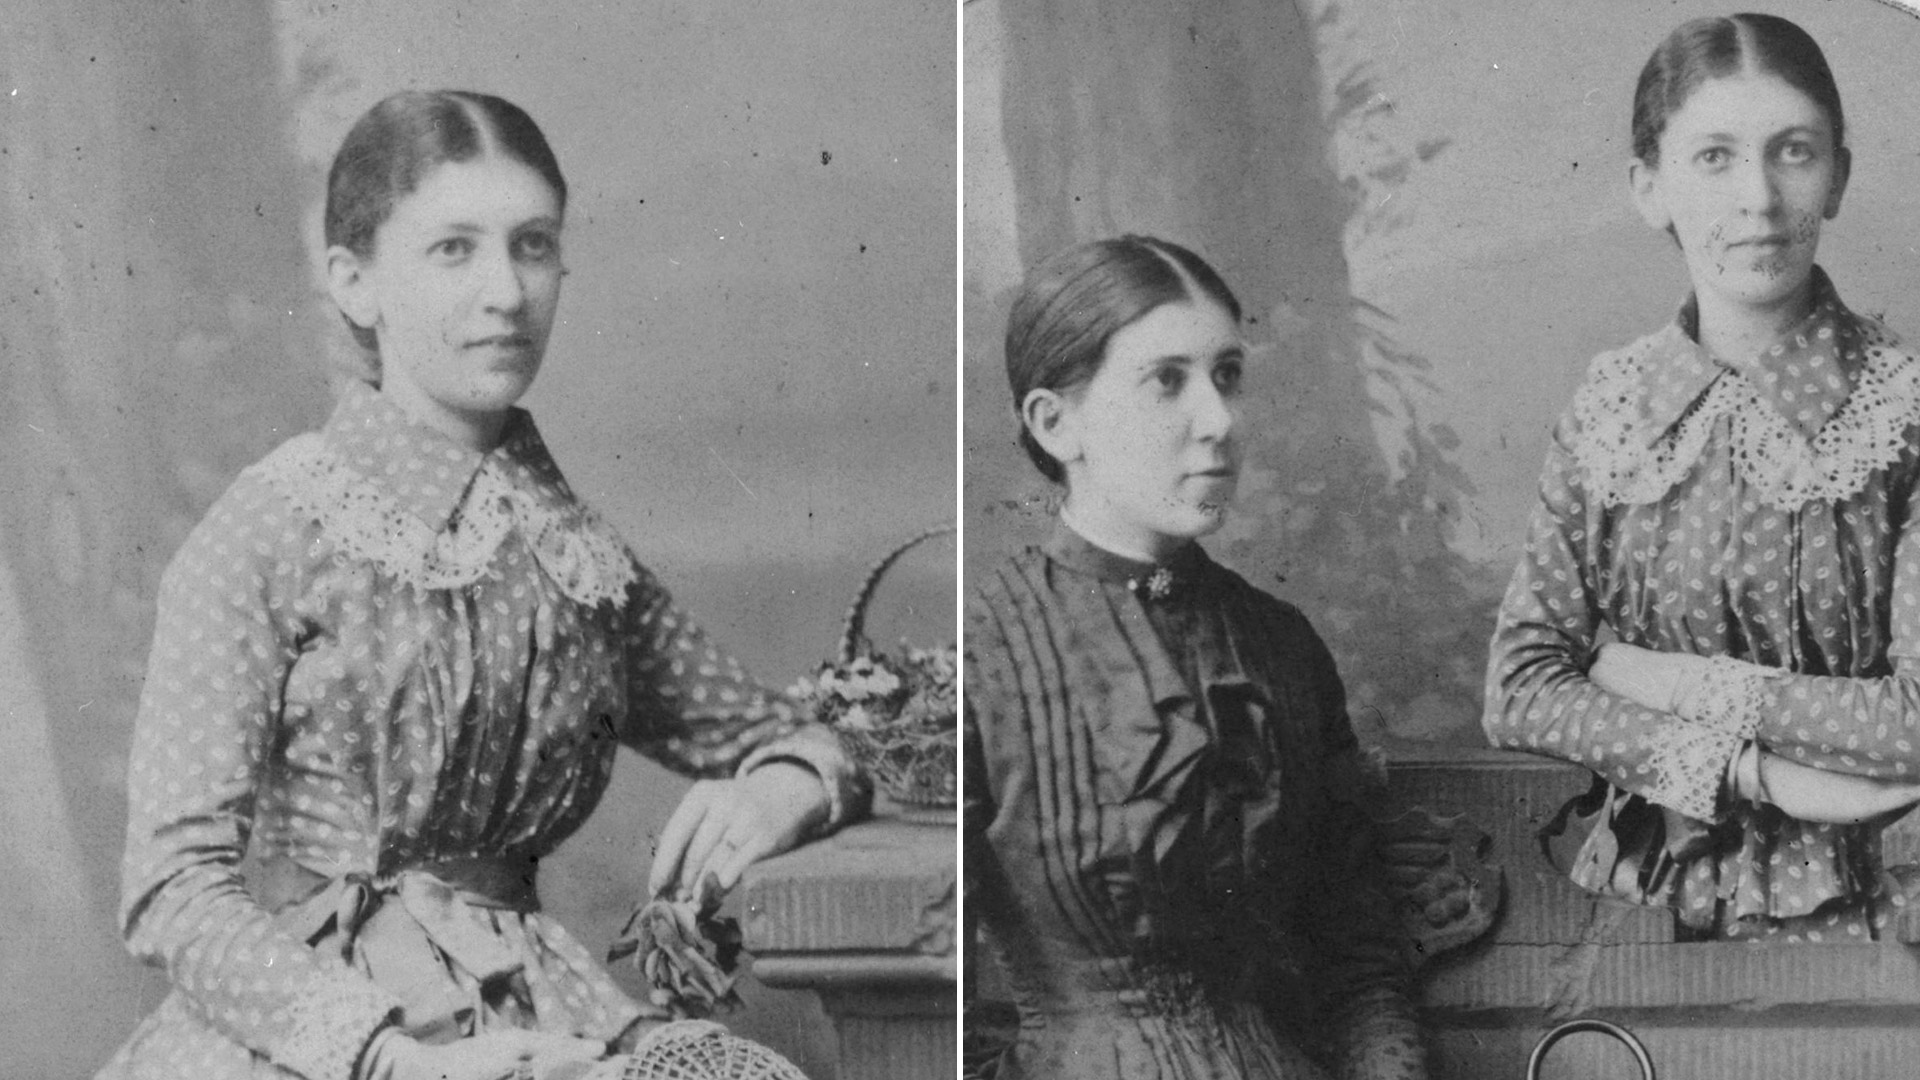 Retratos: Martha Freud, sentada, mirando hacia la derecha, sosteniendo el sombrero en su regazo; y en el otro con su hermana, Minna Bernays, quien fue amante de su esposo Sigmund Freud (Grosby Group)